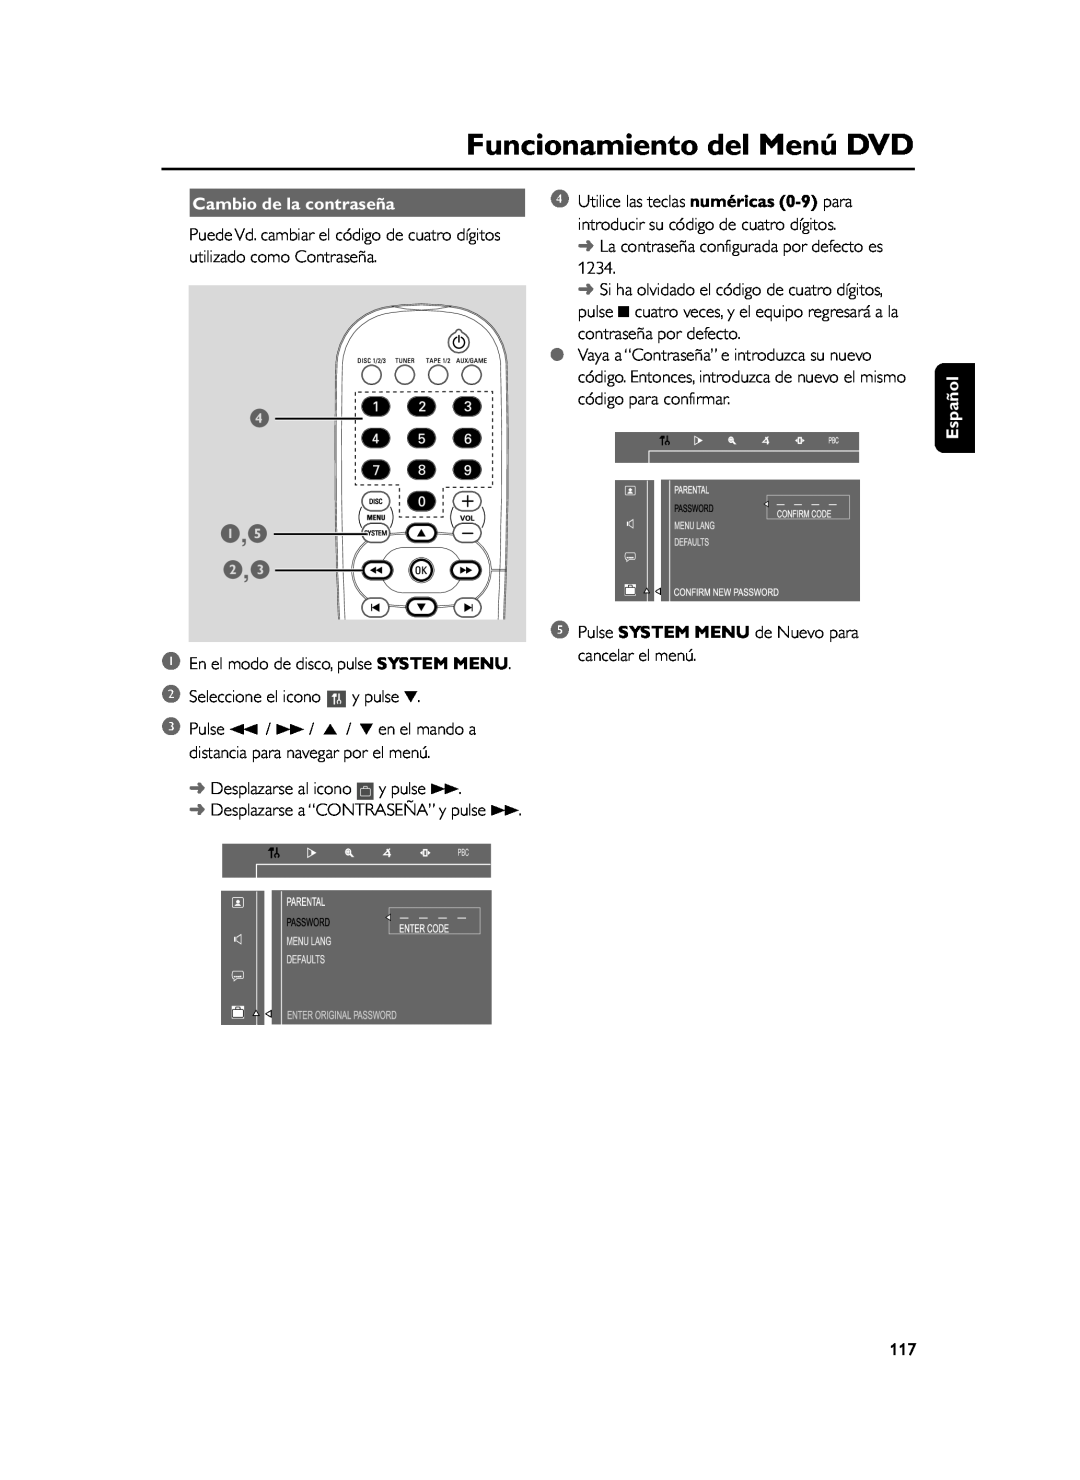 Philips FWD39 manual 4 1,5 2,3, Cambio de la contraseña, Funcionamiento del Menú DVD, Español 